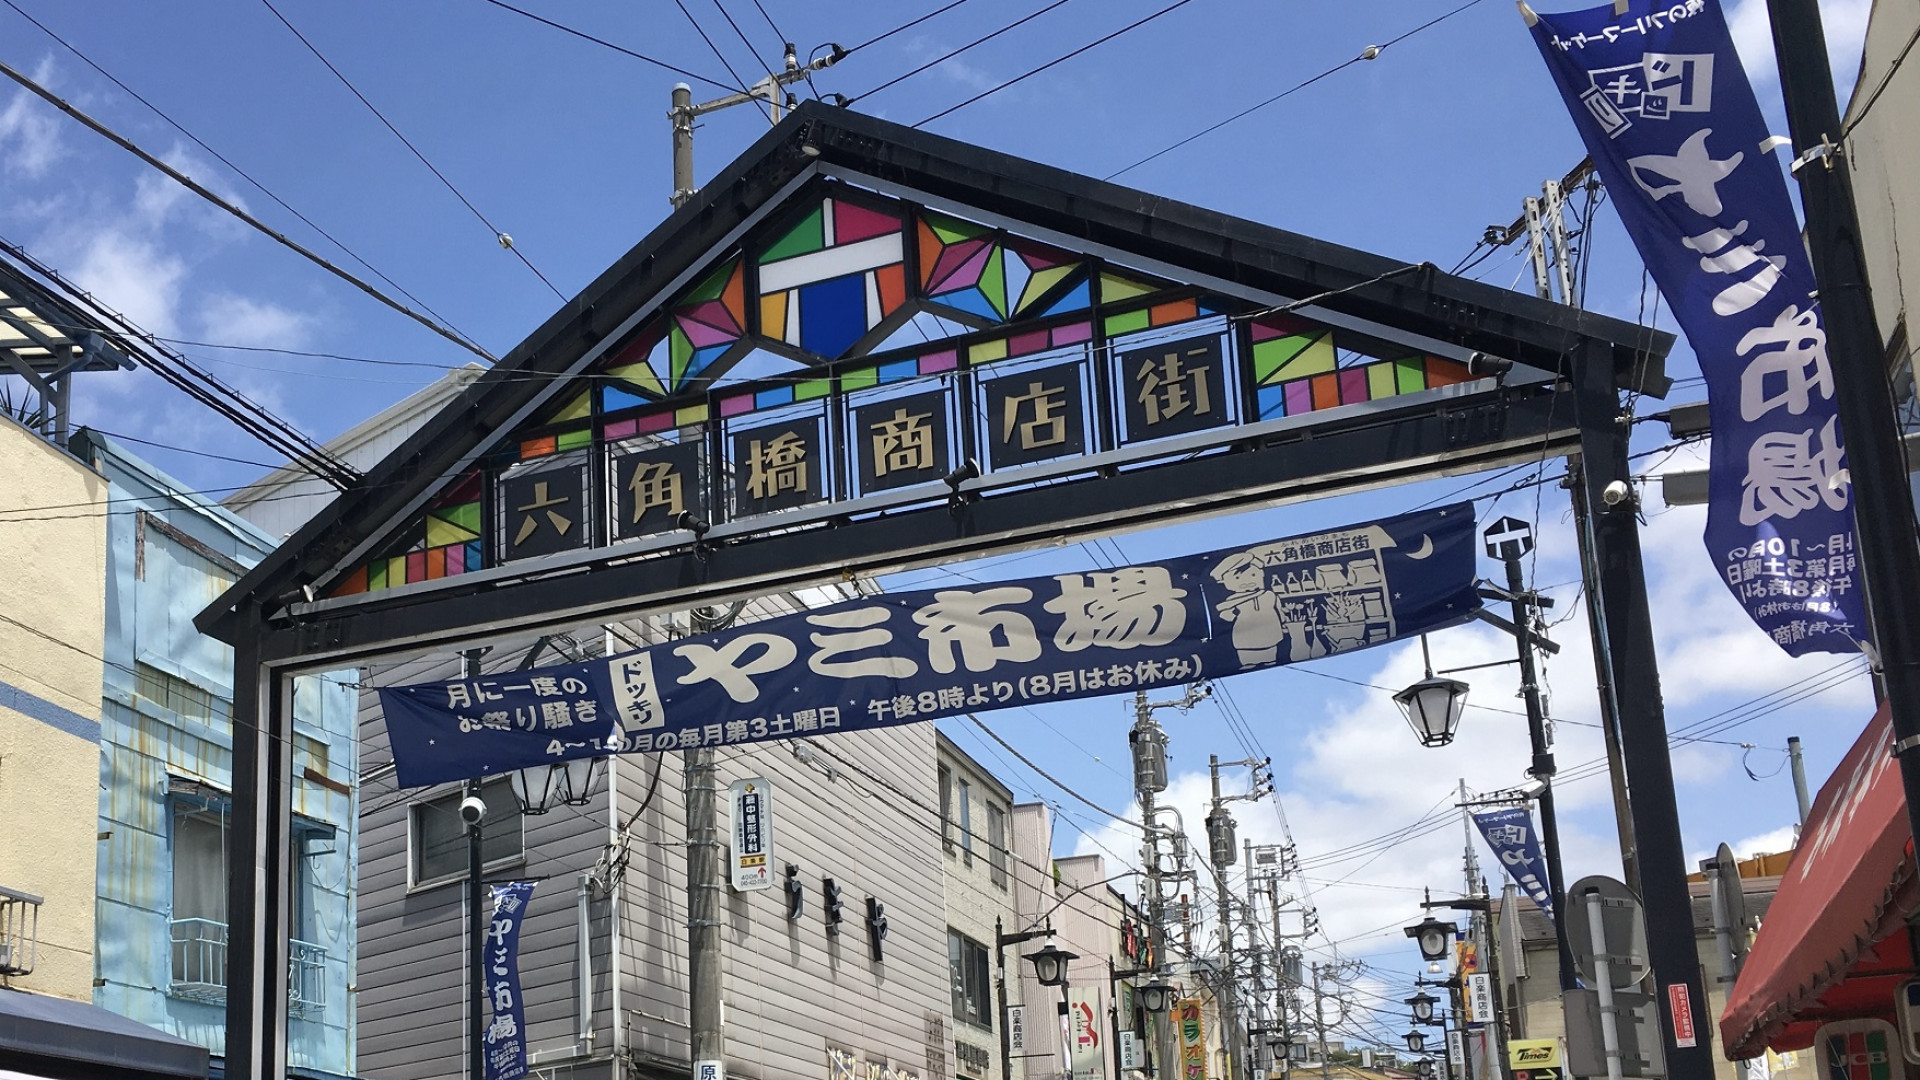 Rokkakubashi Shotengai (shopping area)